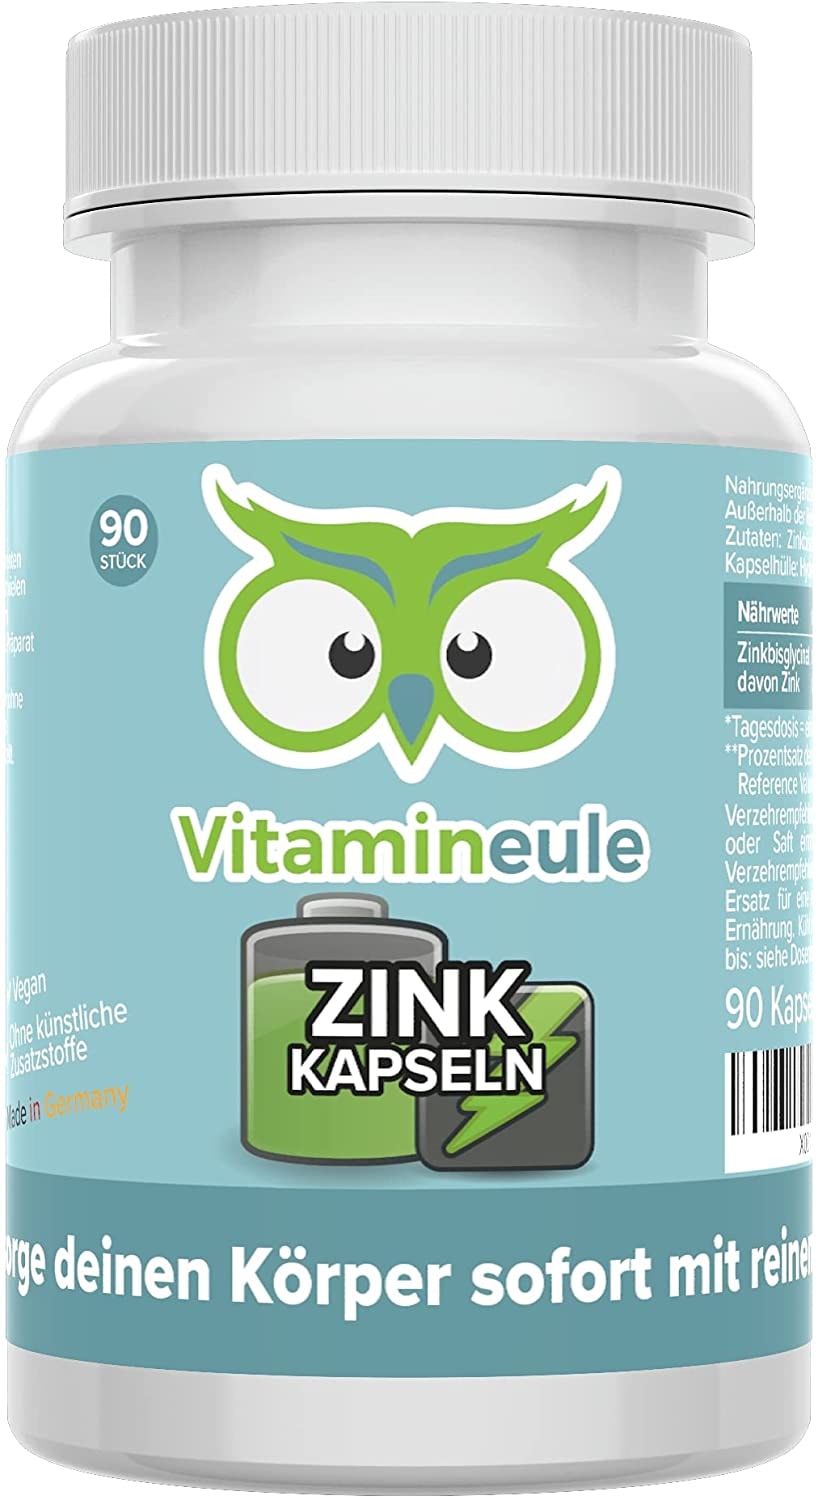 Vitamineule Zink Kapseln 25mg hochdosiert & vegan Zinkbisglycinat ohne künstliche Zusätze kleine Kapseln statt große Tabletten - Qualität aus Deutschland